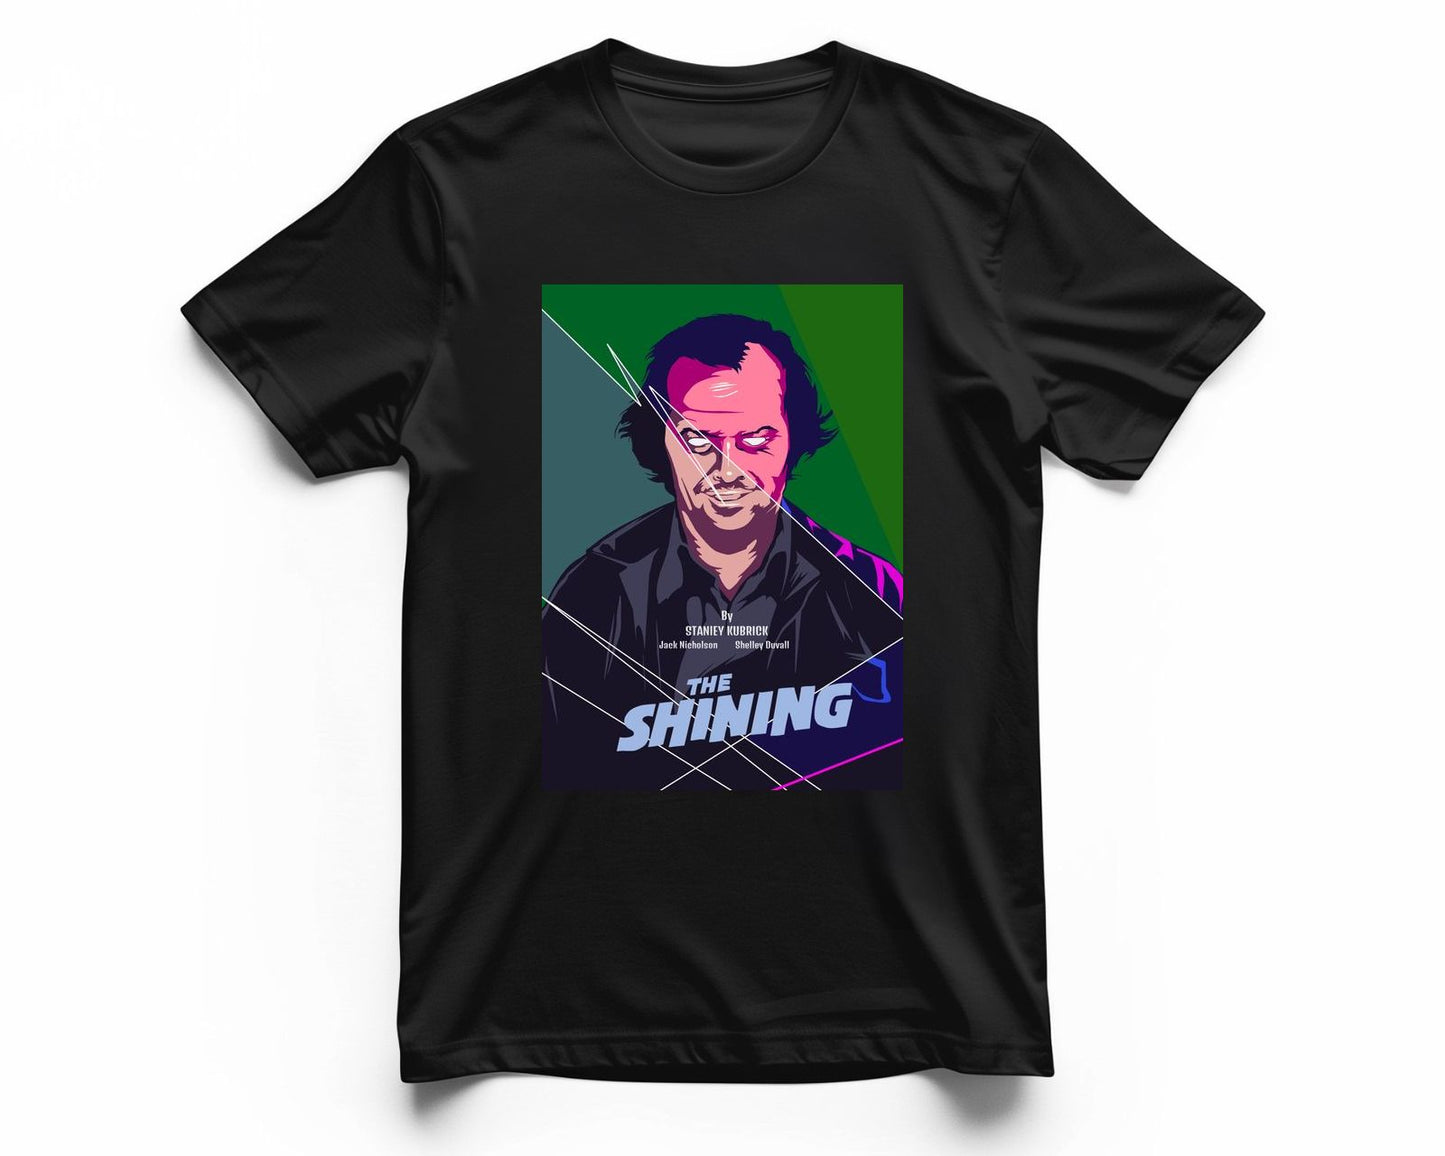 The shininng - @insaneclown